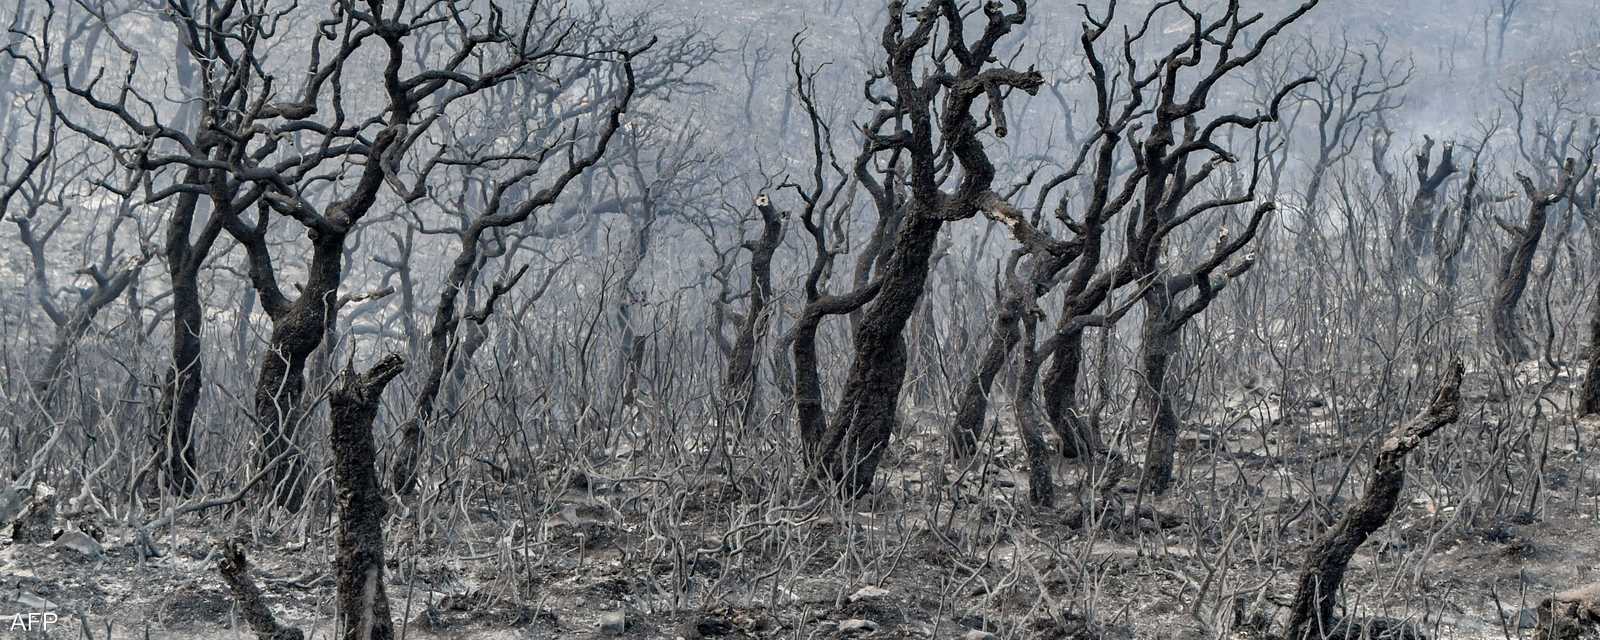 الأشجار احترقت في غابات ملولة طبرقة على الحدود مع الجزائر